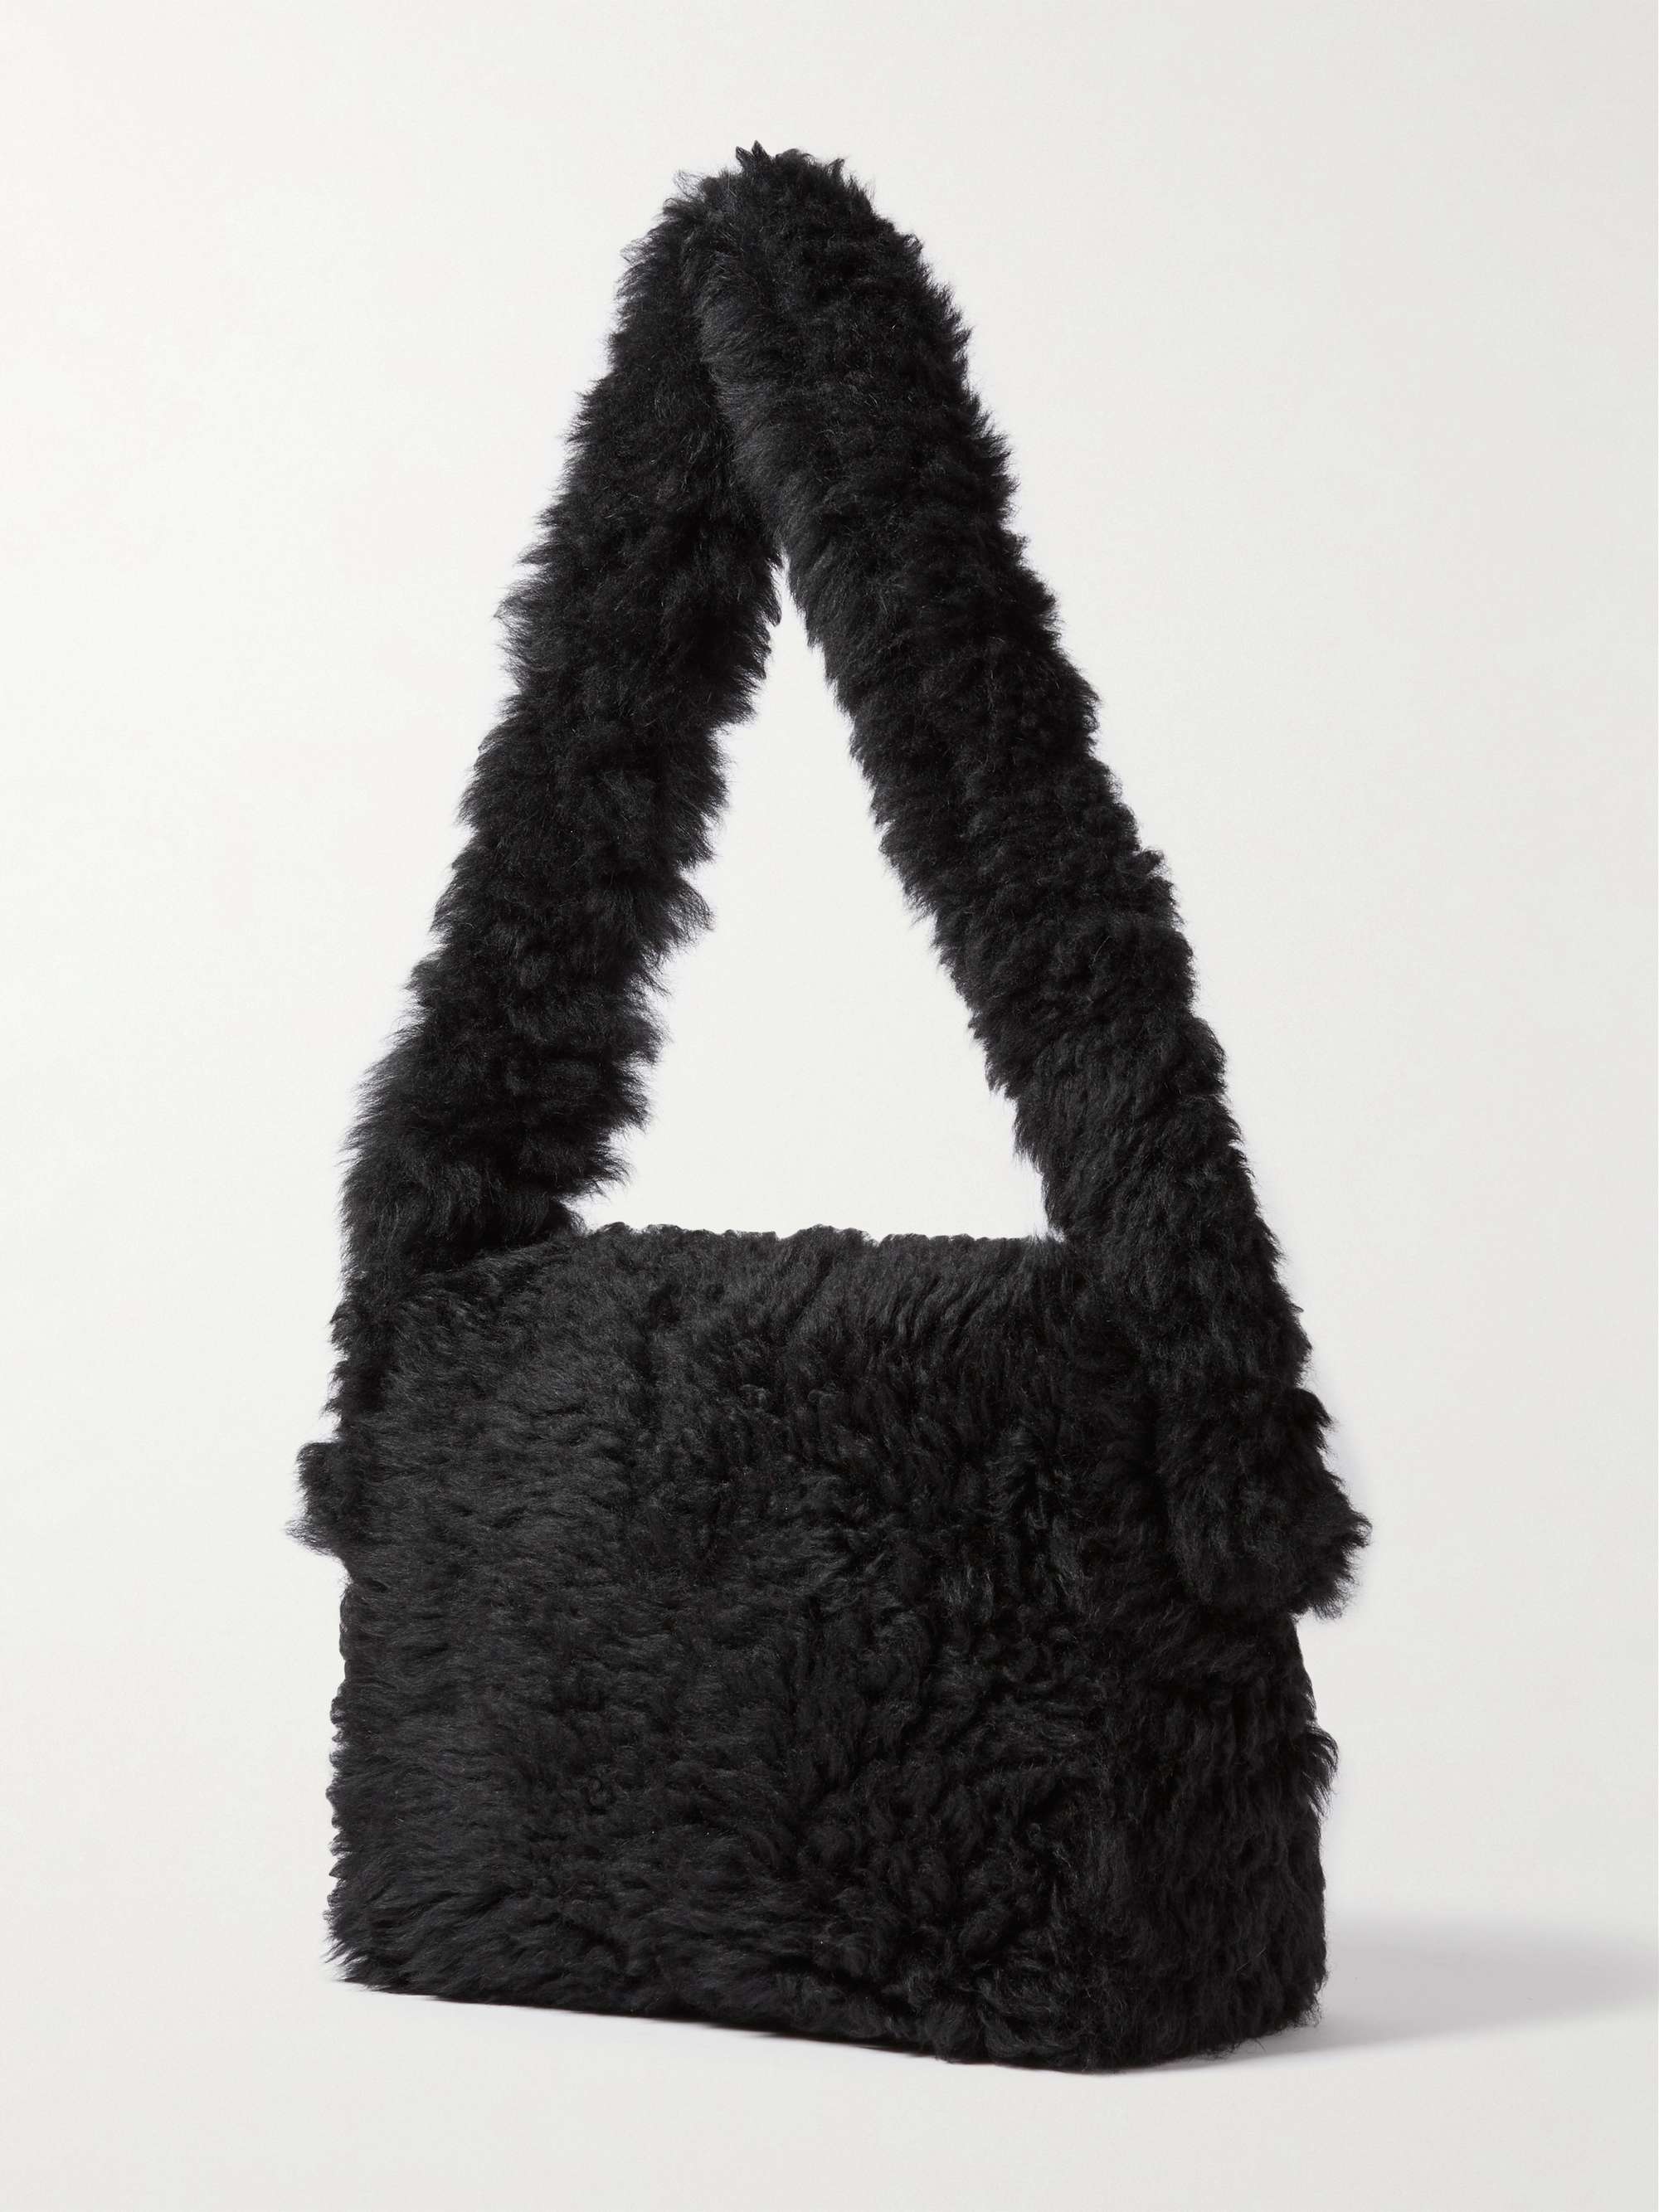 SAINT LAURENT Leather-Trimmed Shearling Messenger Bag